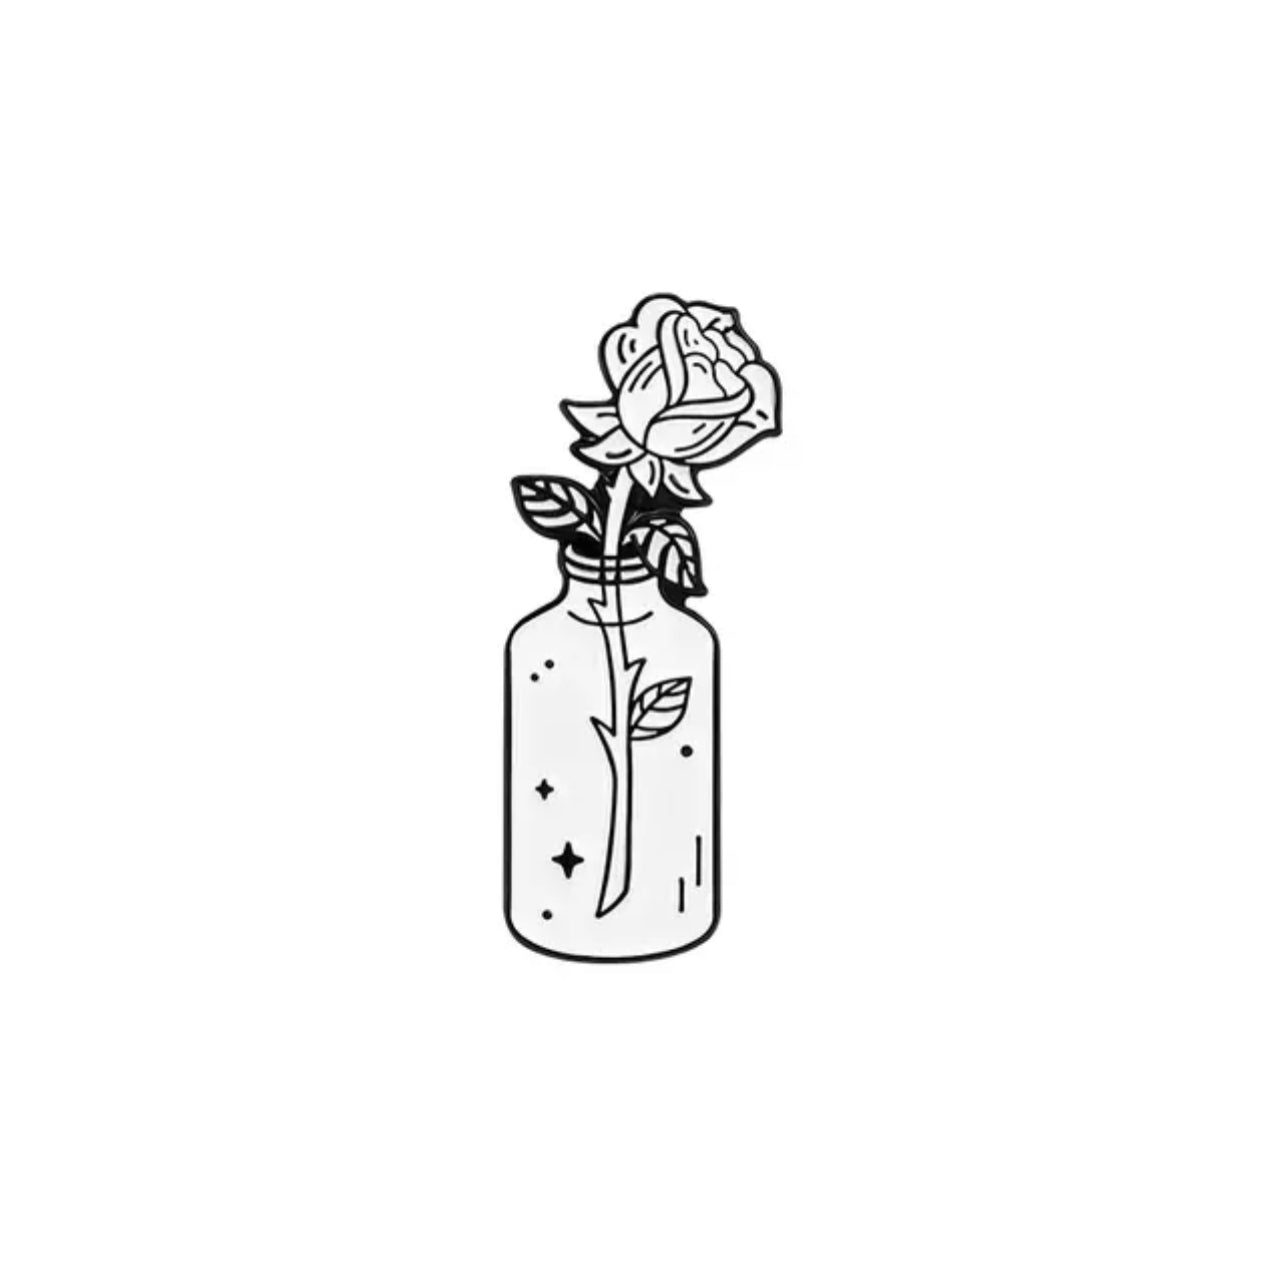 Rose in a bottle